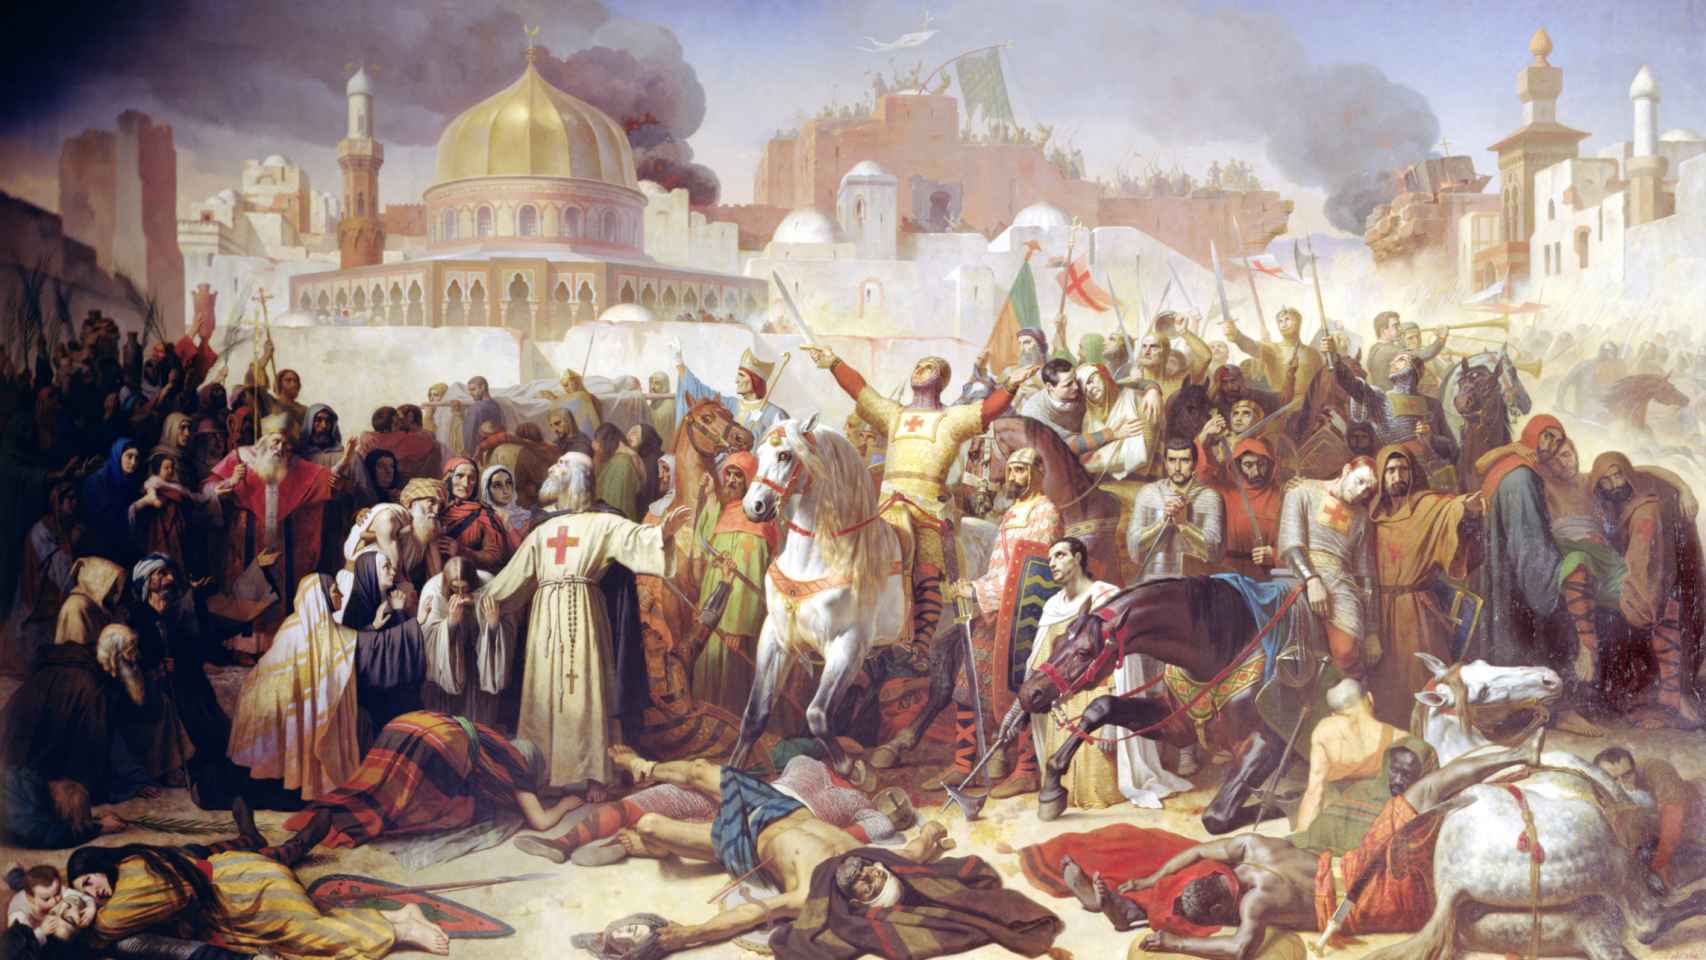 La conquista de Jerusalén (1099), según el pincel de Émil Signol.